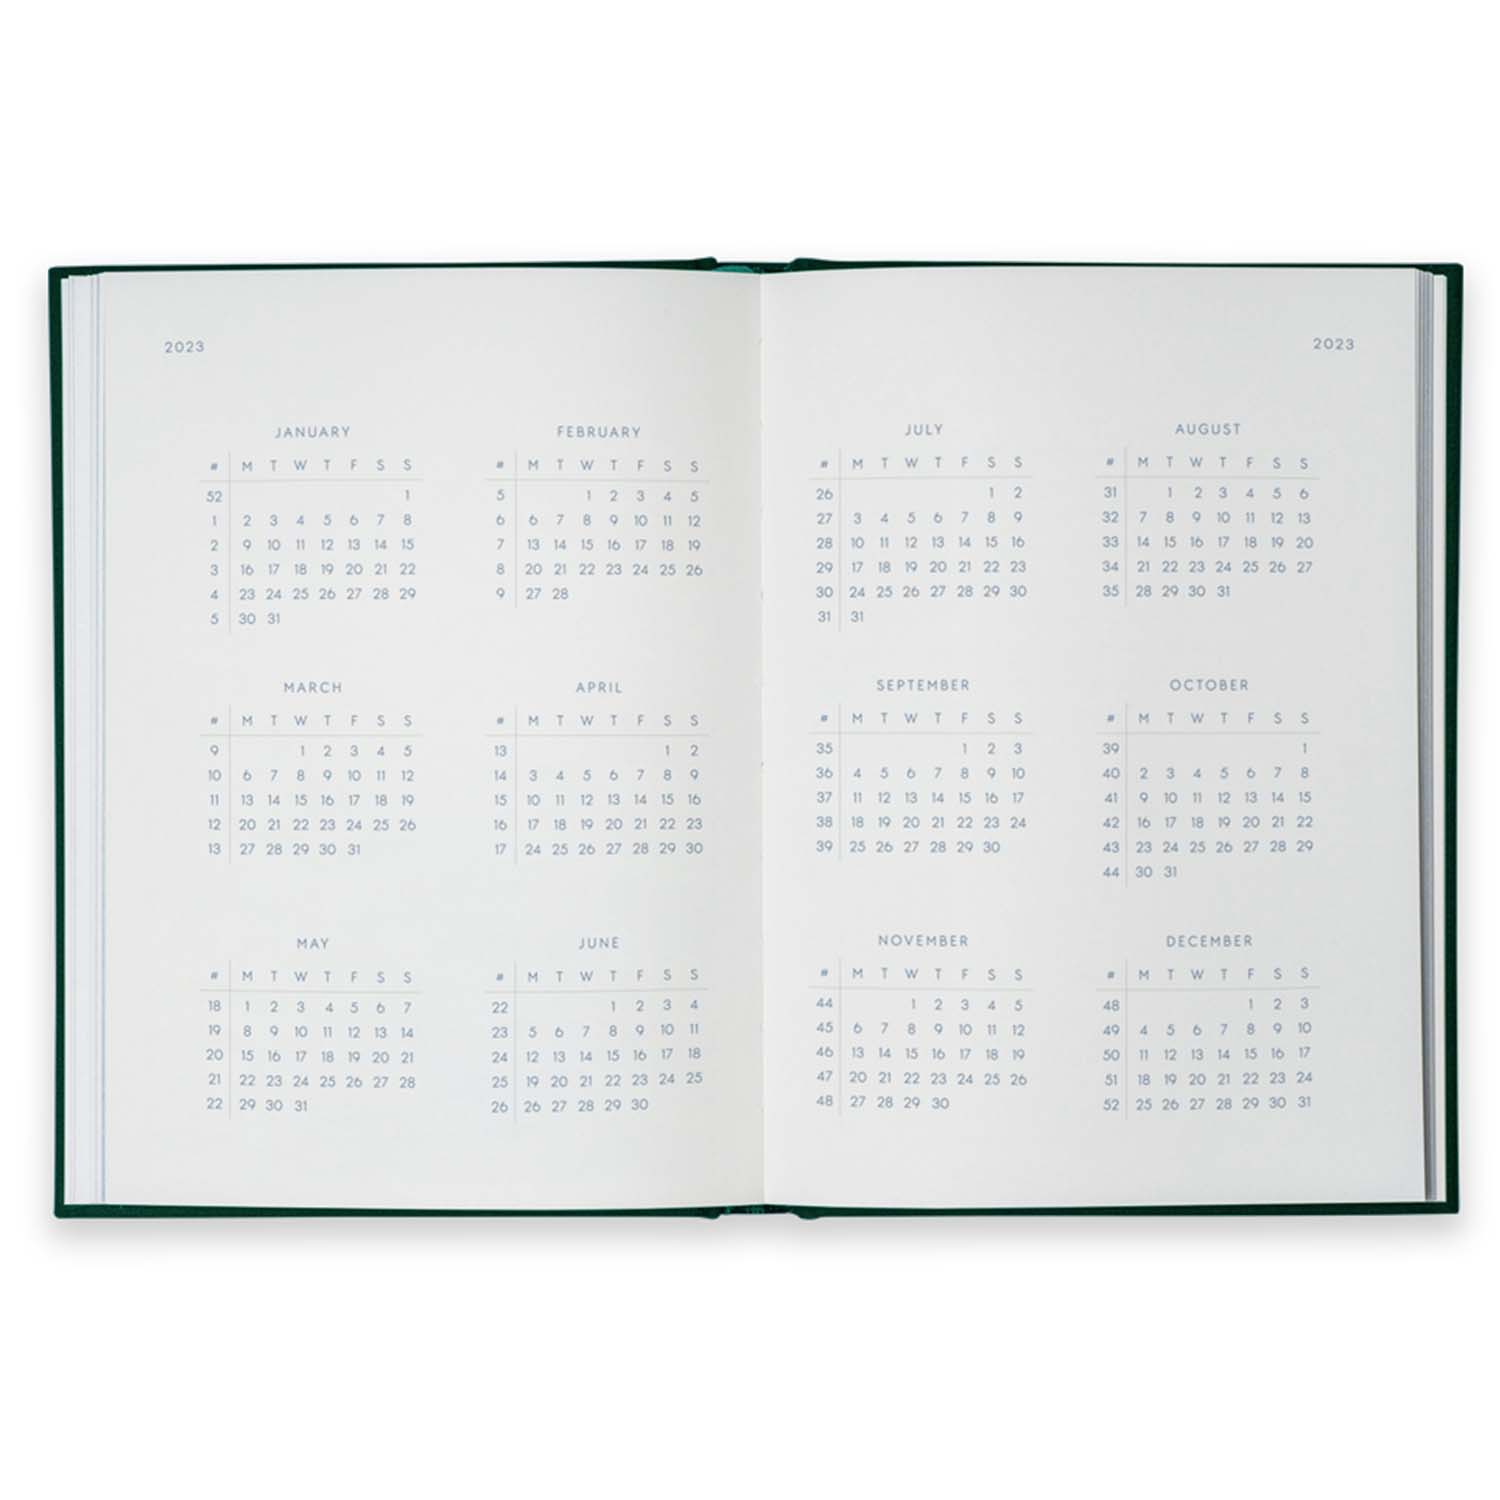 Kartotek Capenhagen - Notebook Calendar 2023 - NC-0006 - Inside 1